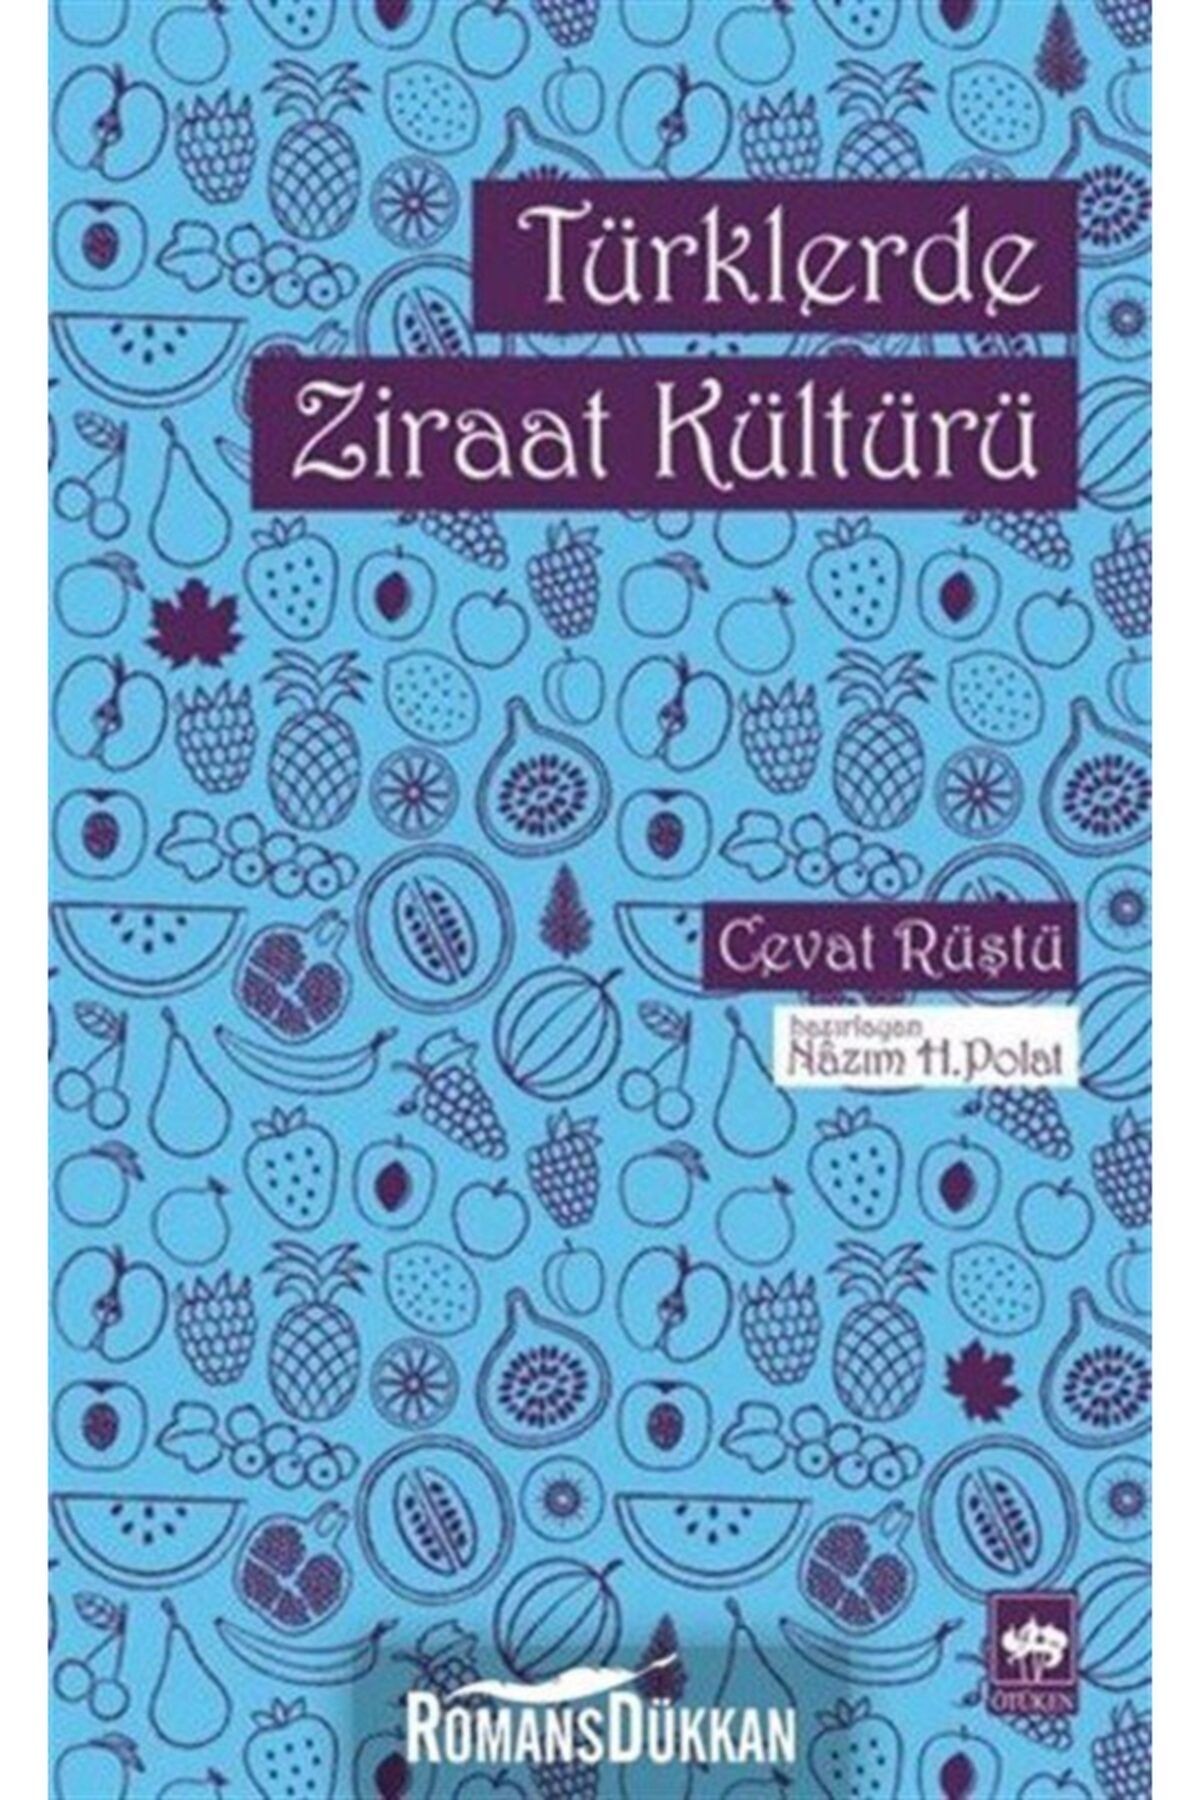 Ötüken Neşriyat Türklerde Ziraat Kültürü - - Cevat Rüştü Kitabı